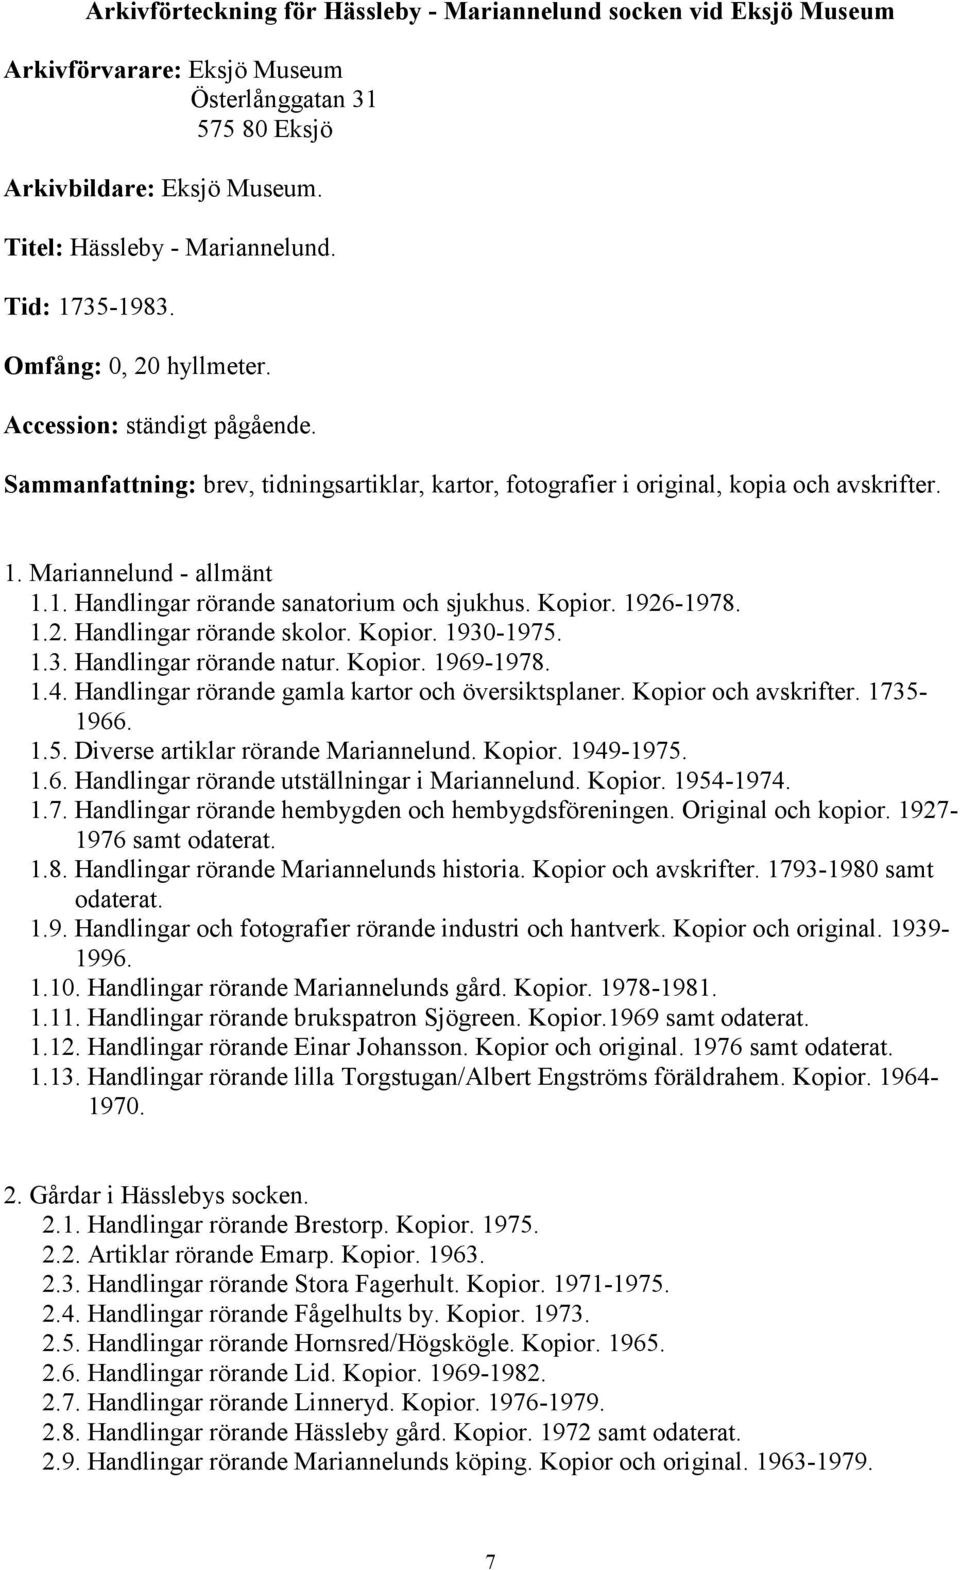 Kopior. 1926-1978. 1.2. Handlingar rörande skolor. Kopior. 1930-1975. 1.3. Handlingar rörande natur. Kopior. 1969-1978. 1.4. Handlingar rörande gamla kartor och översiktsplaner. Kopior och avskrifter.